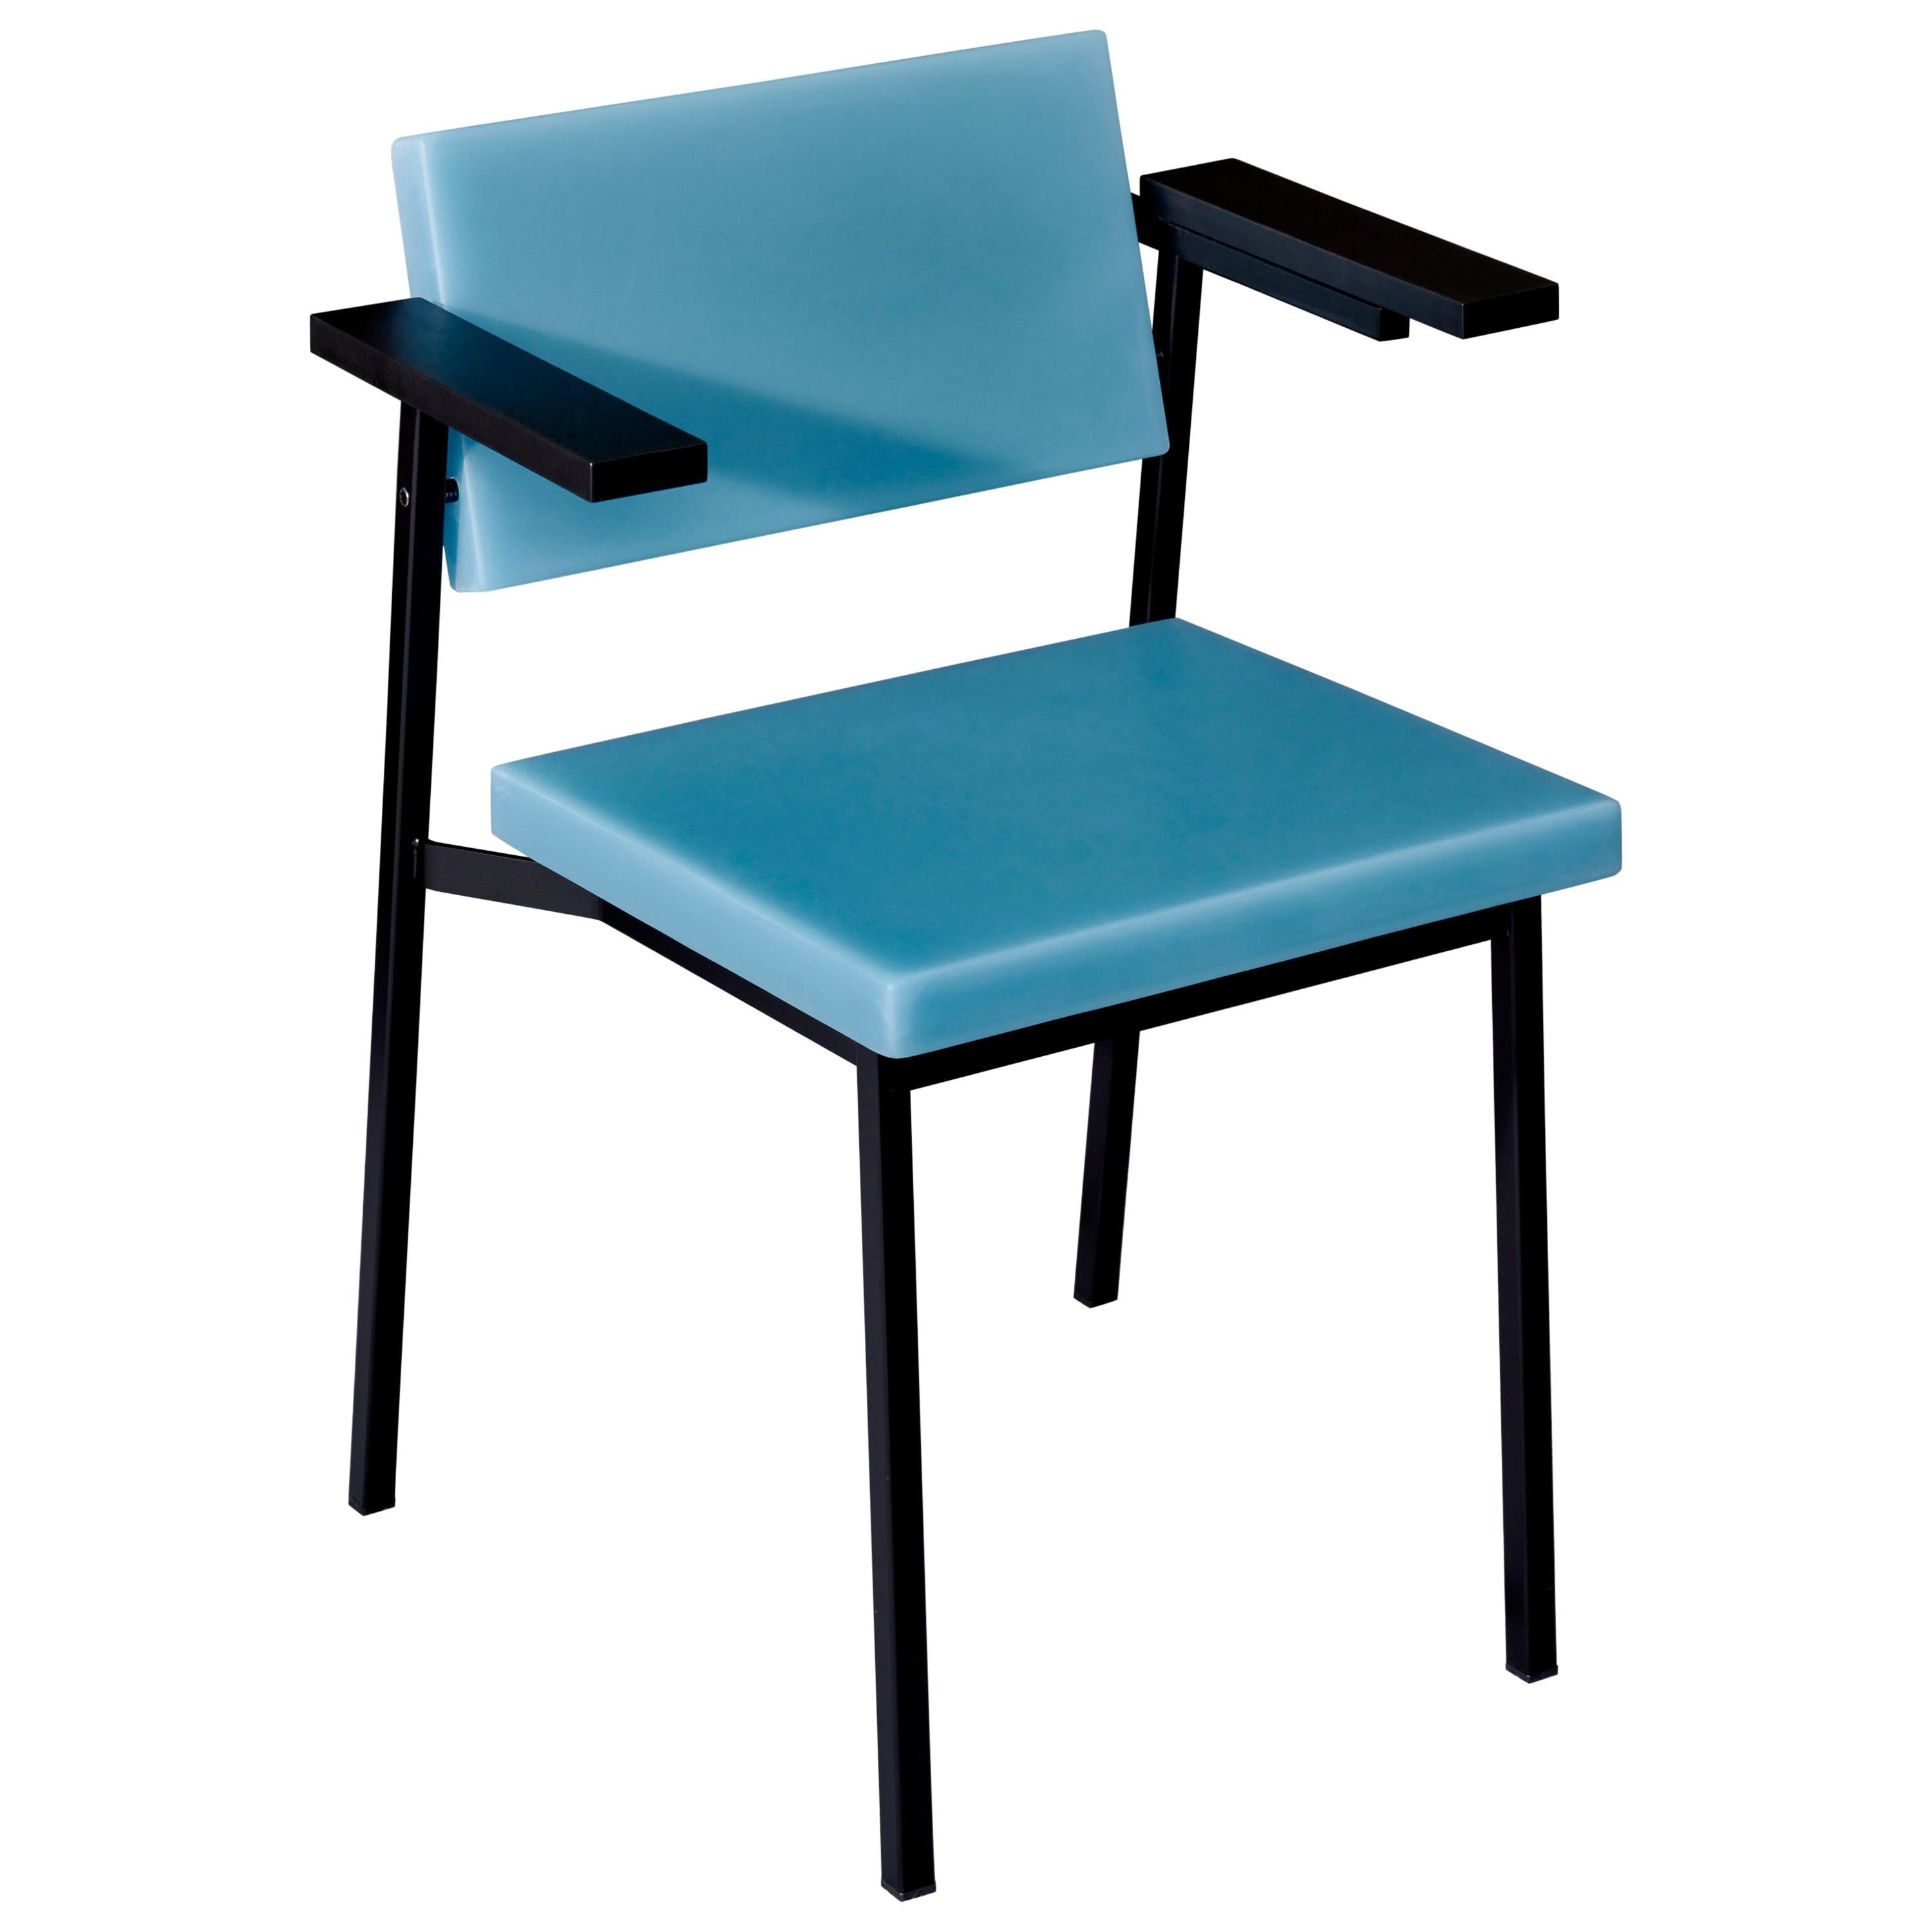 Contemporary SE69 Stuhl aus Kunstharz 2019 von Sabine Marcelis